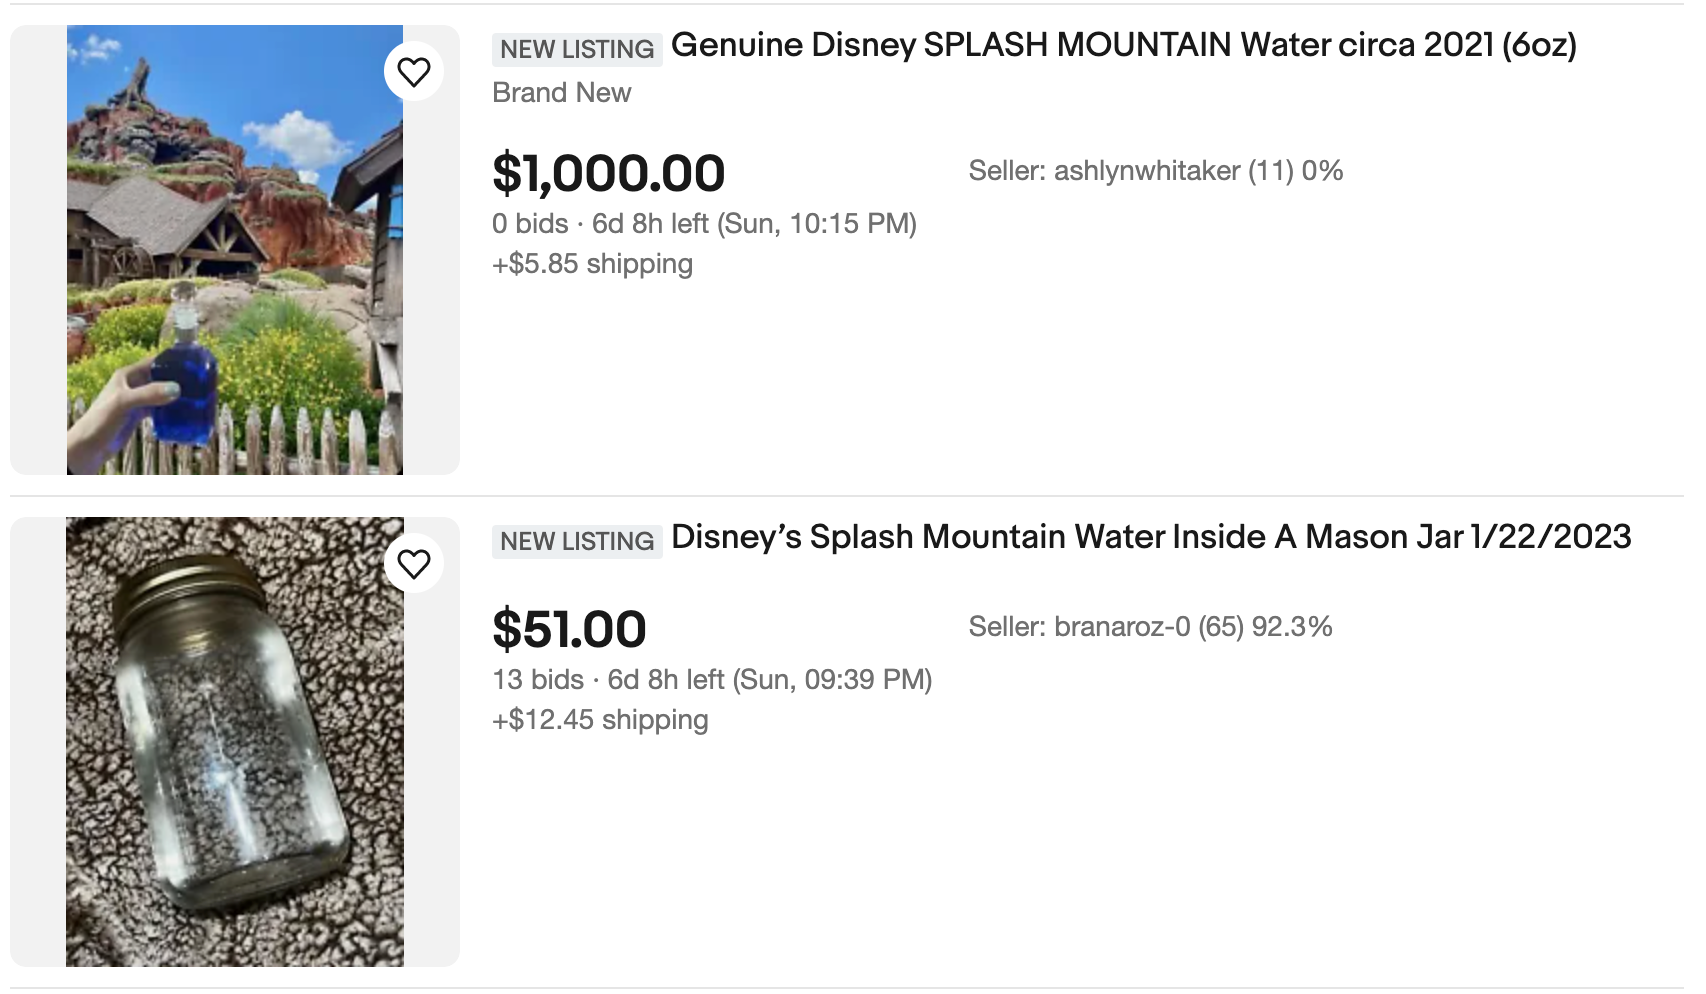 Splash Mountain eBay listing